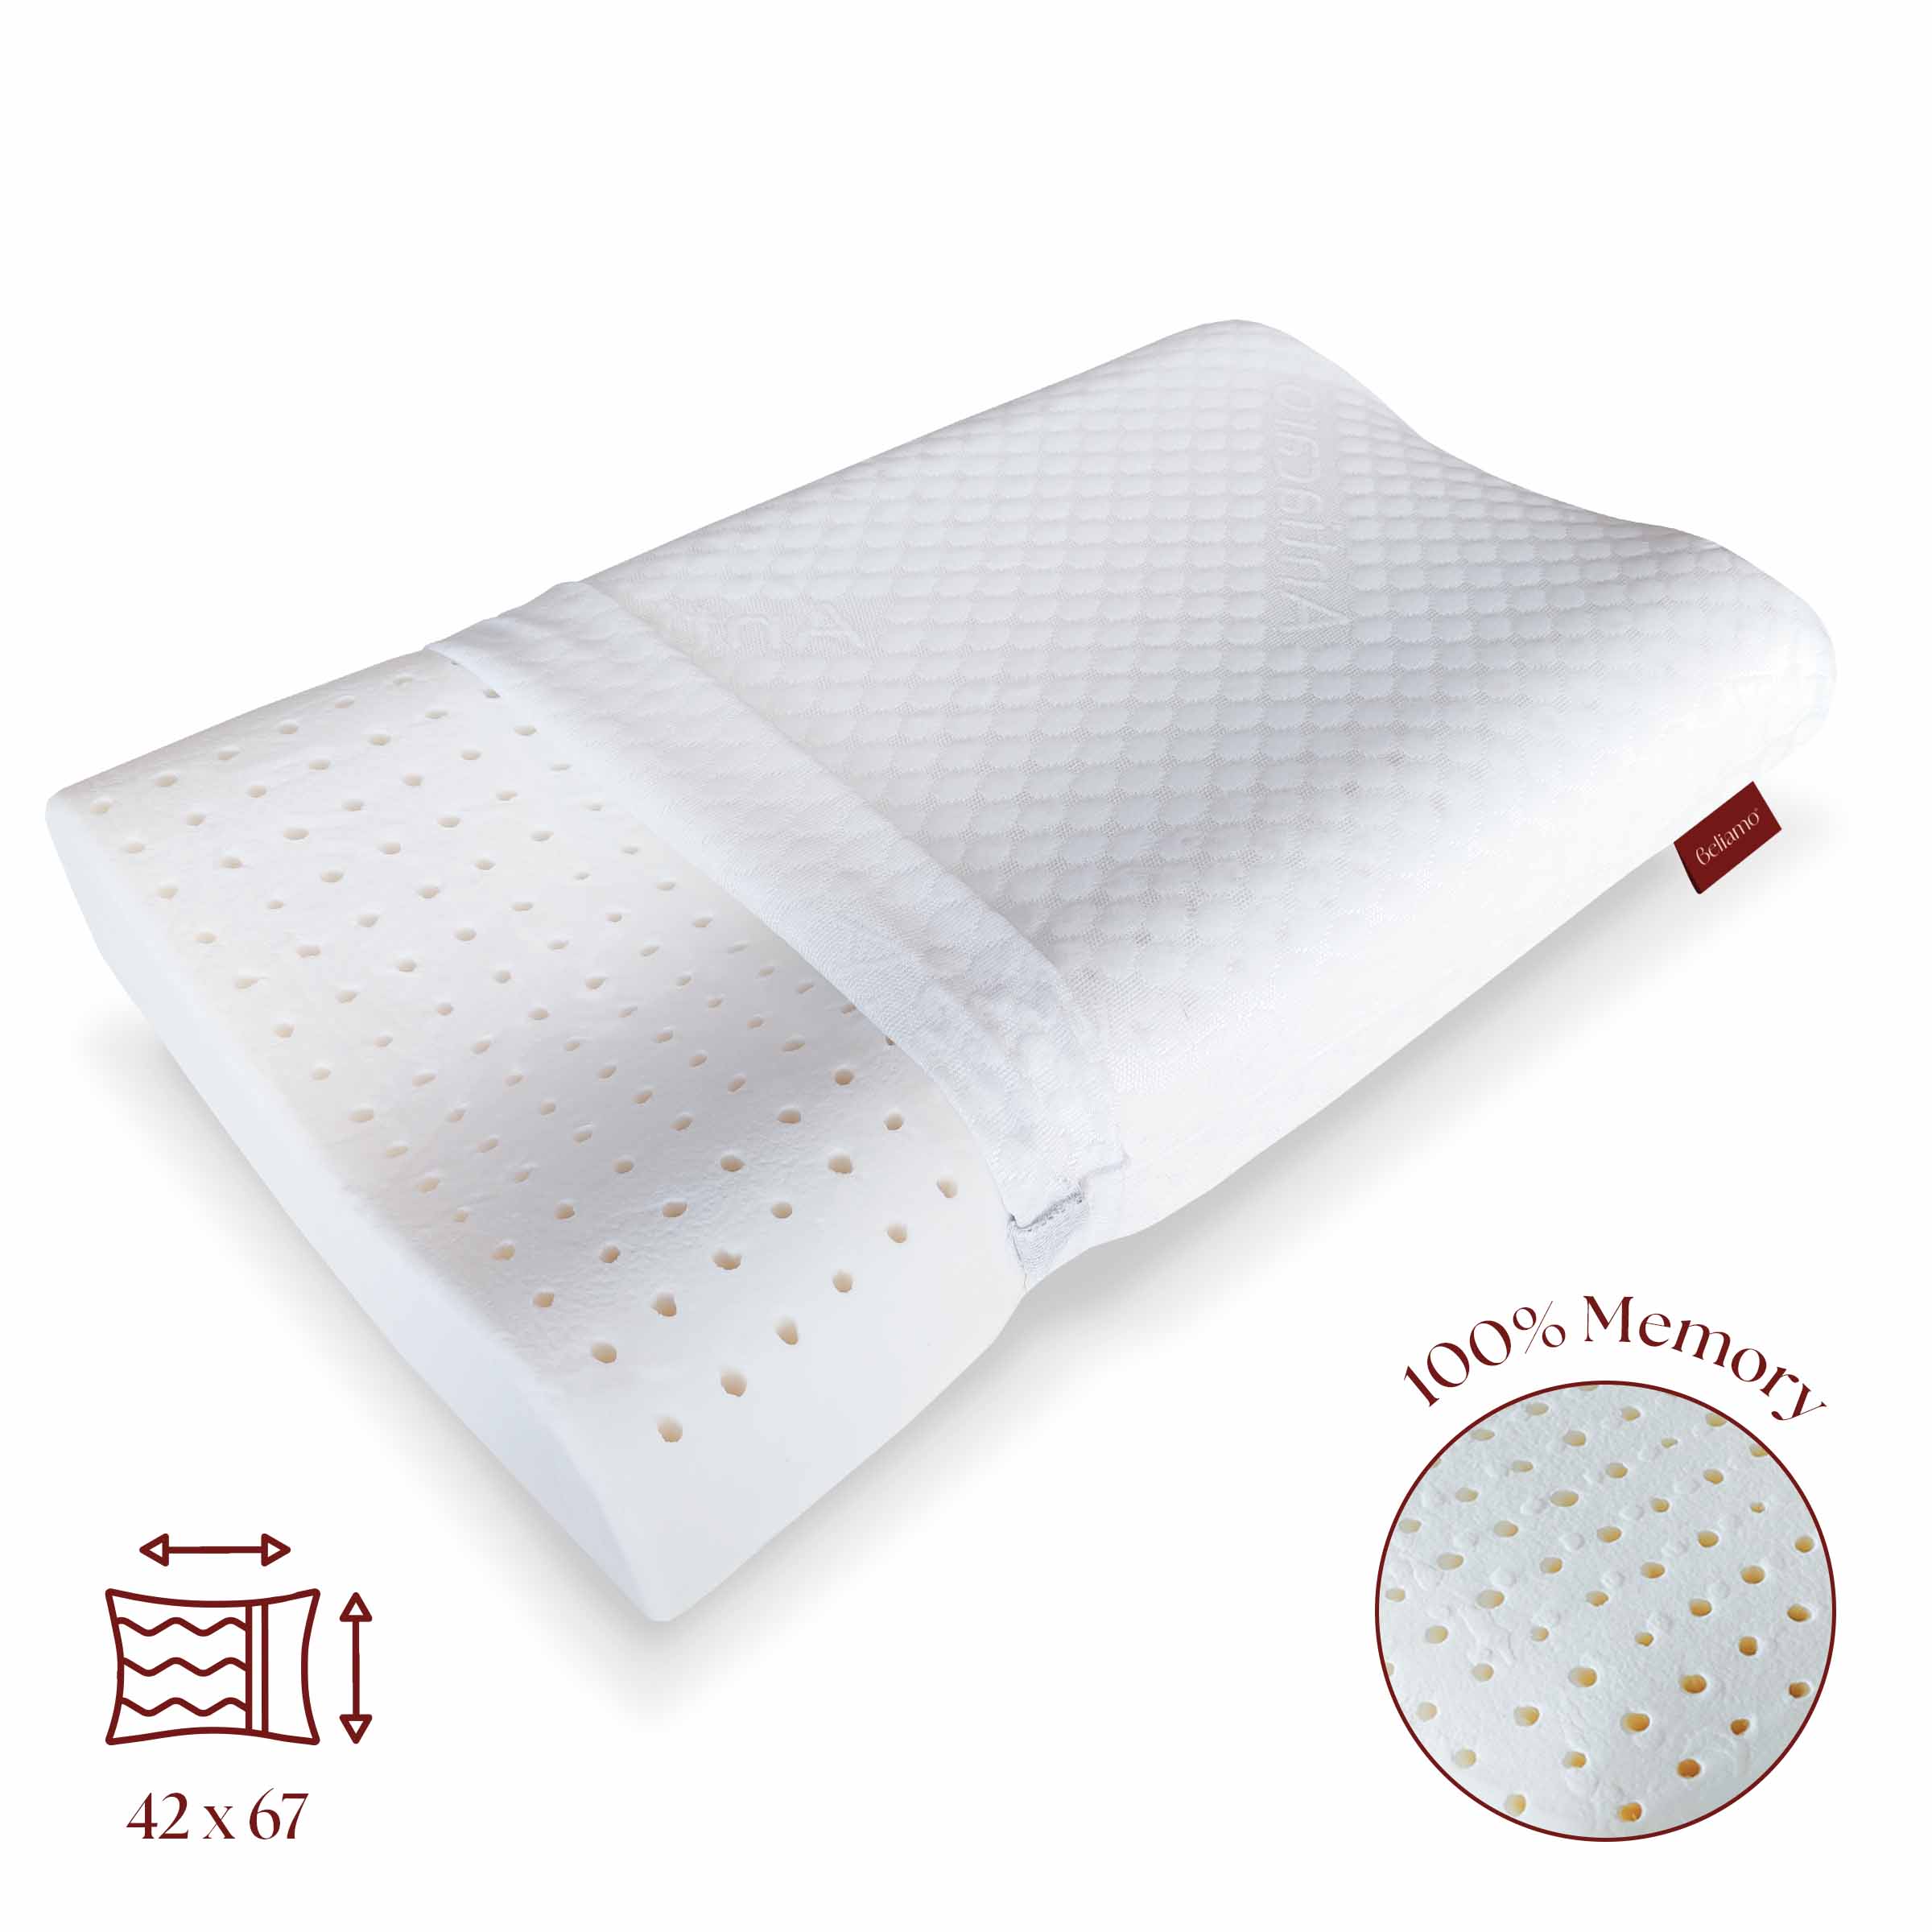 Cuscino cervicale Bologna in memory foam di Beliamo, progettato per offrire supporto ergonomico e comfort durante il sonno